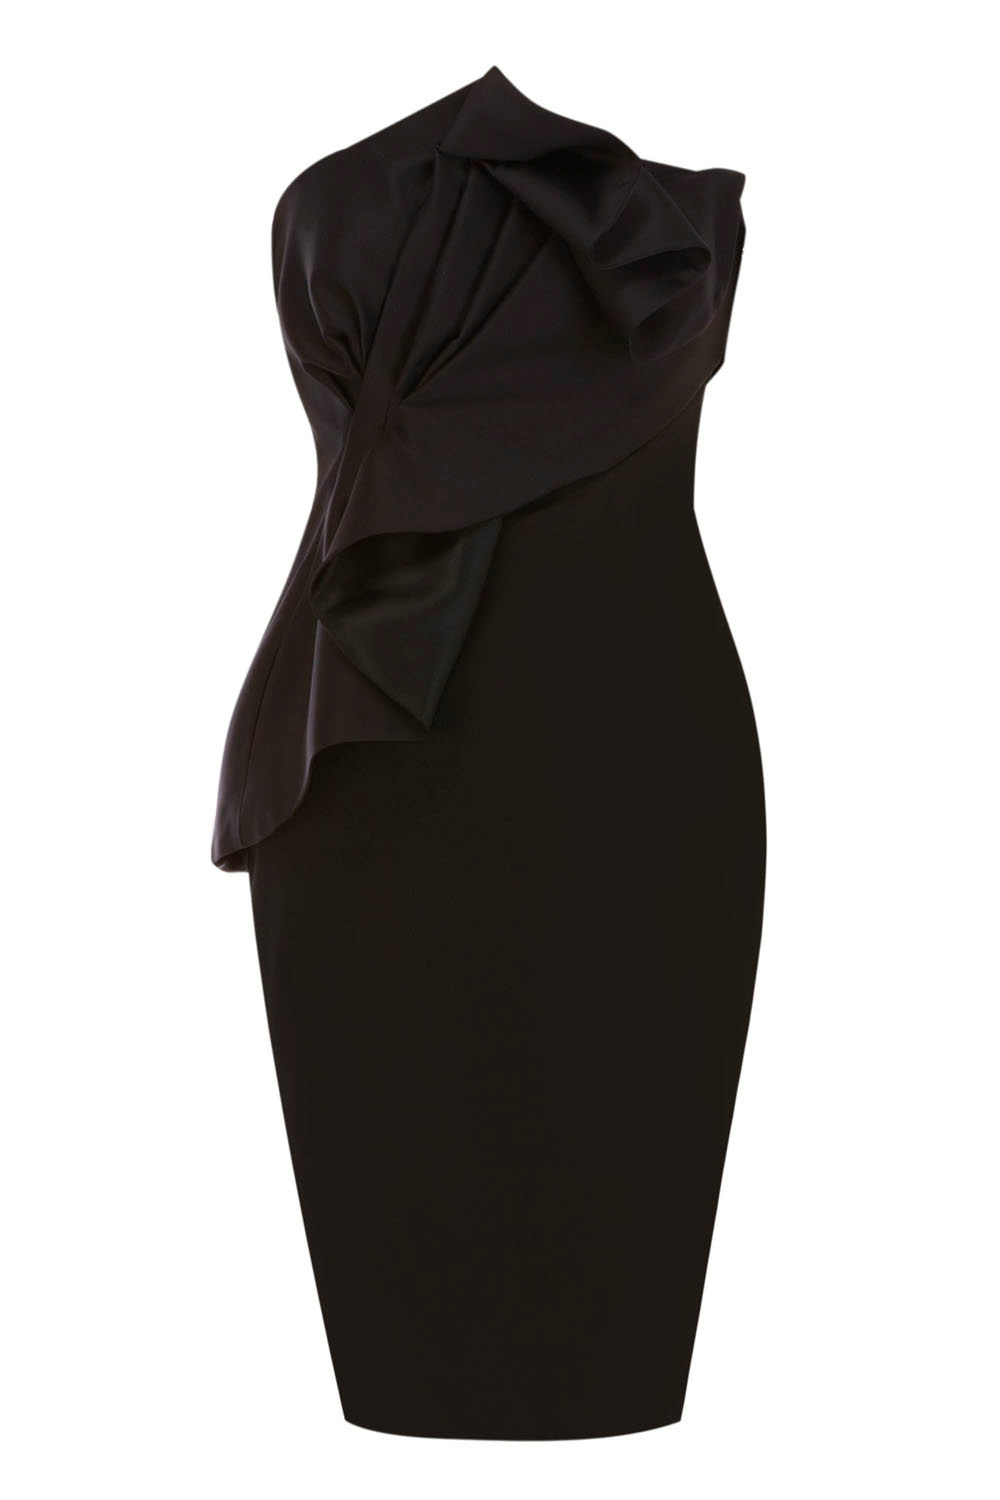 Lyst - Coast Moulan Dress in Black